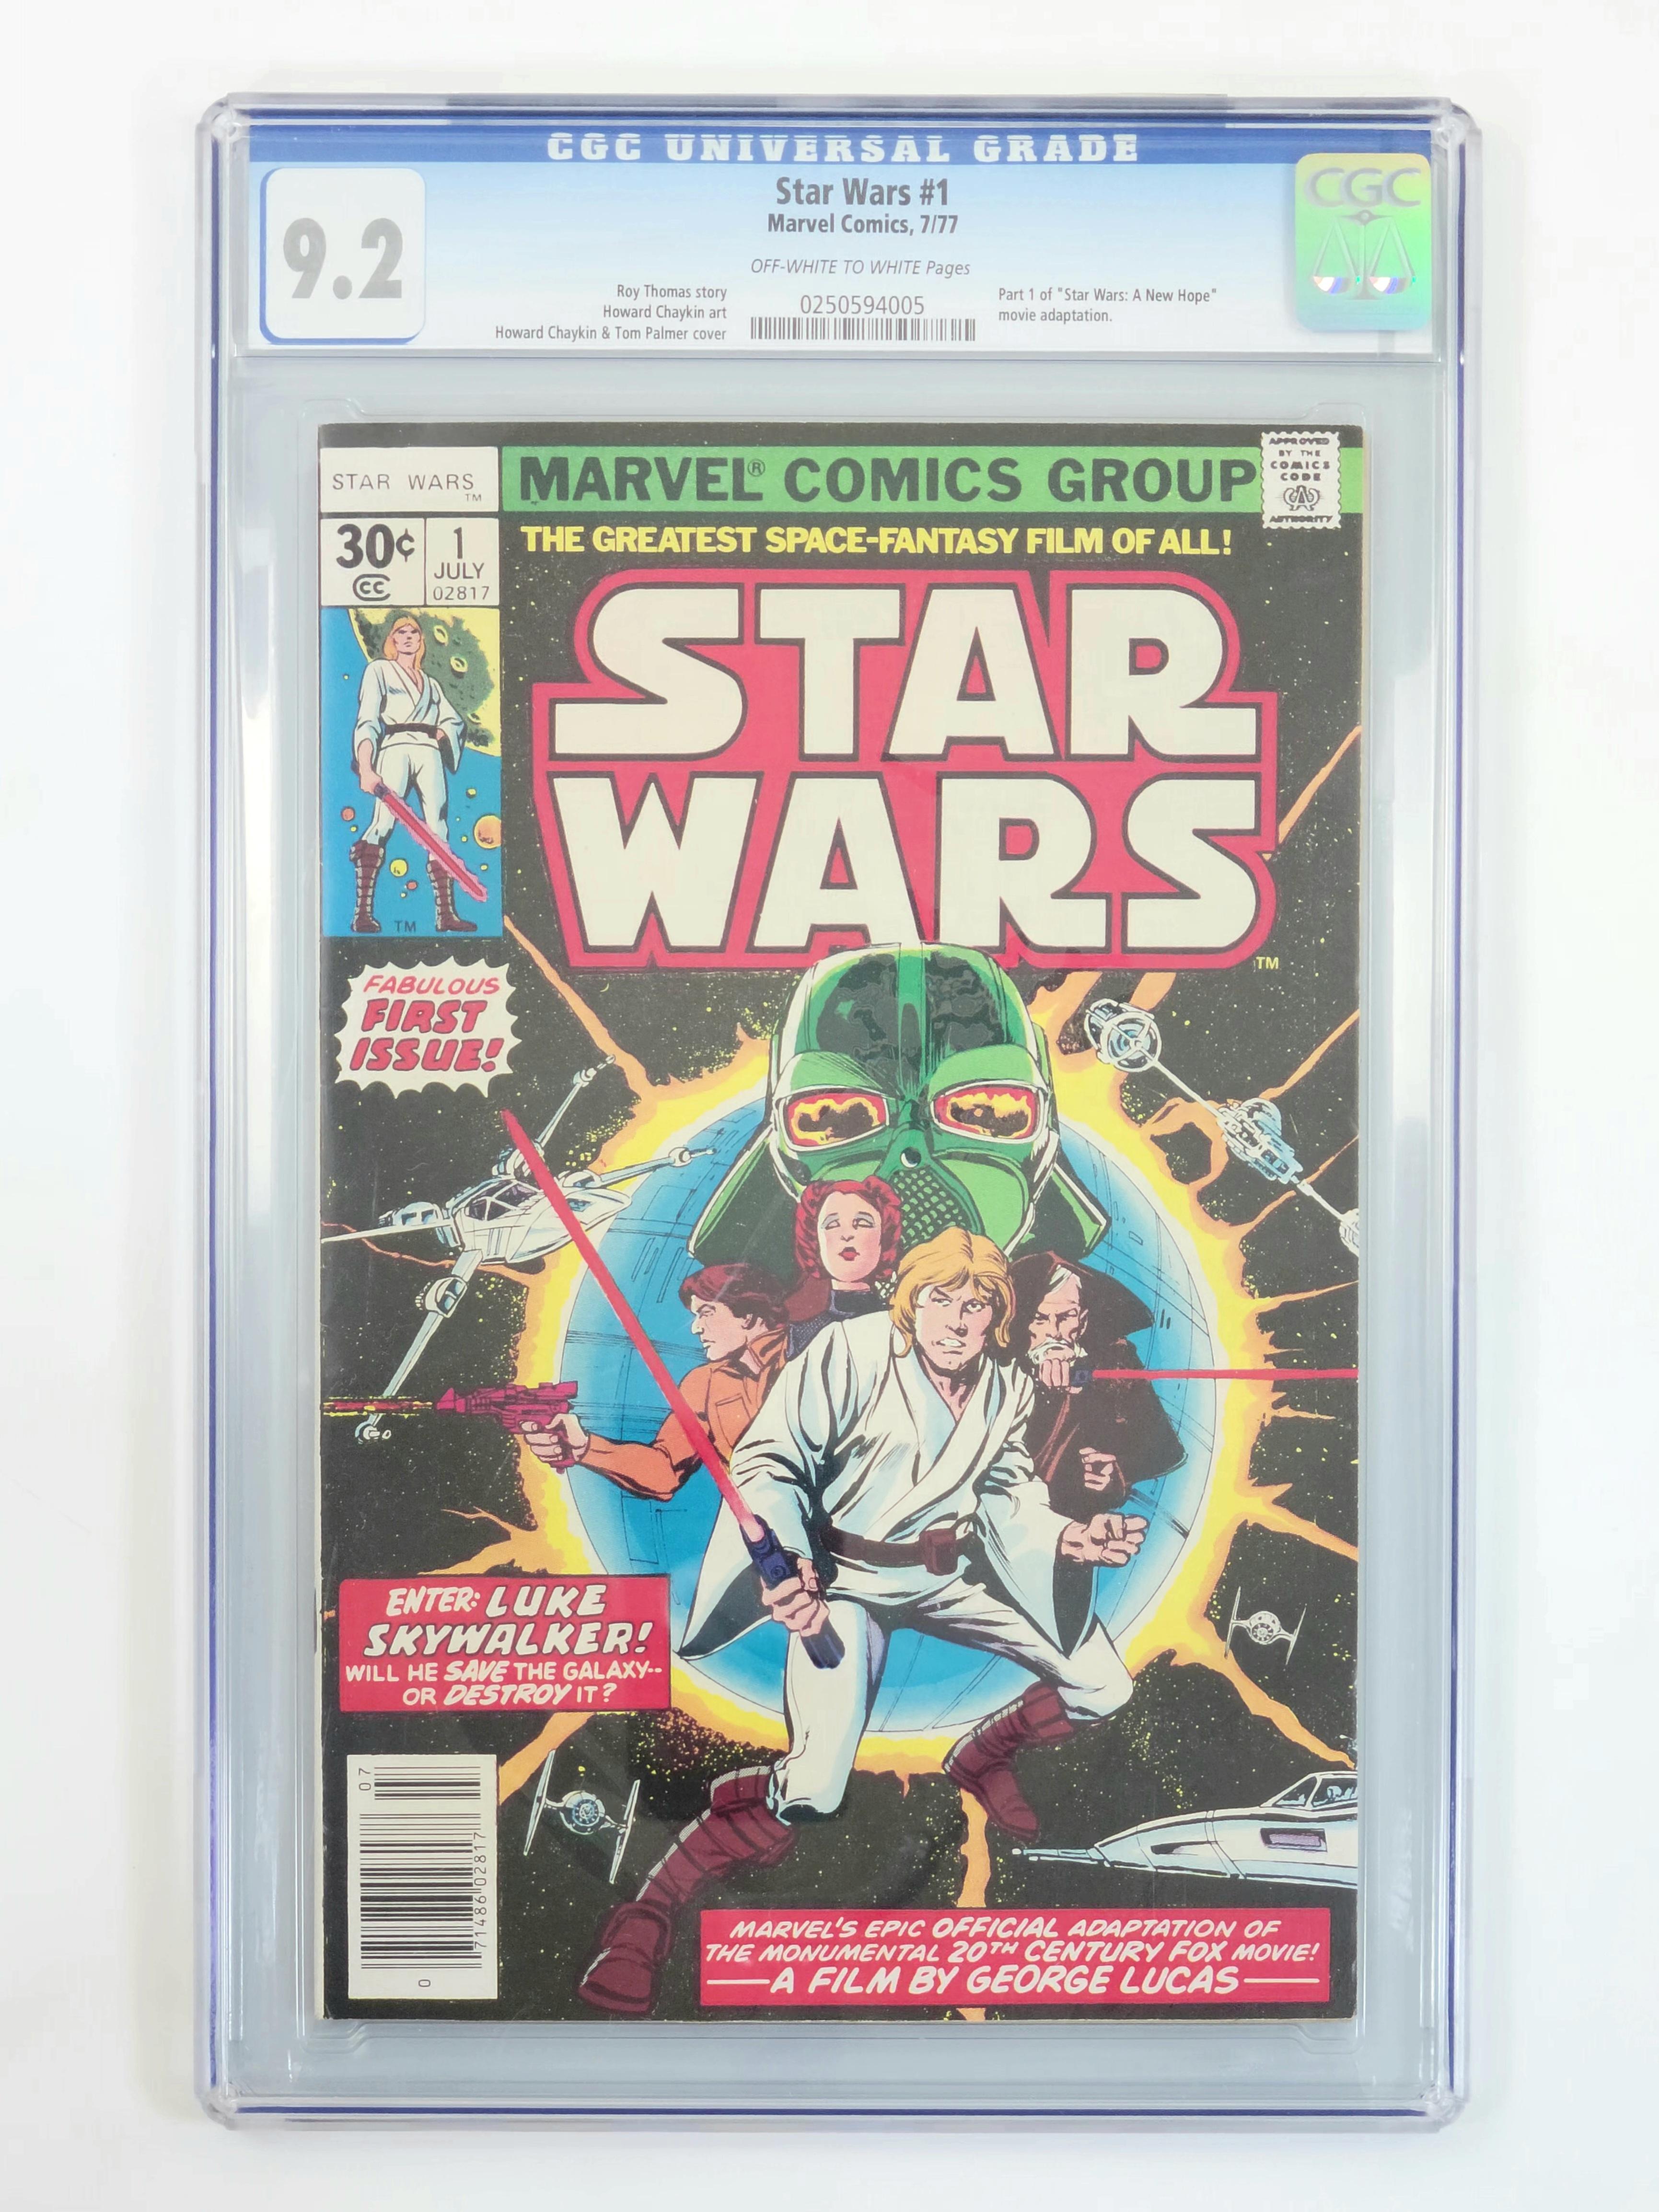 Star Wars, Vol. 1 (Marvel) #1 - Graded (CGC-9.2 Near Mint -)